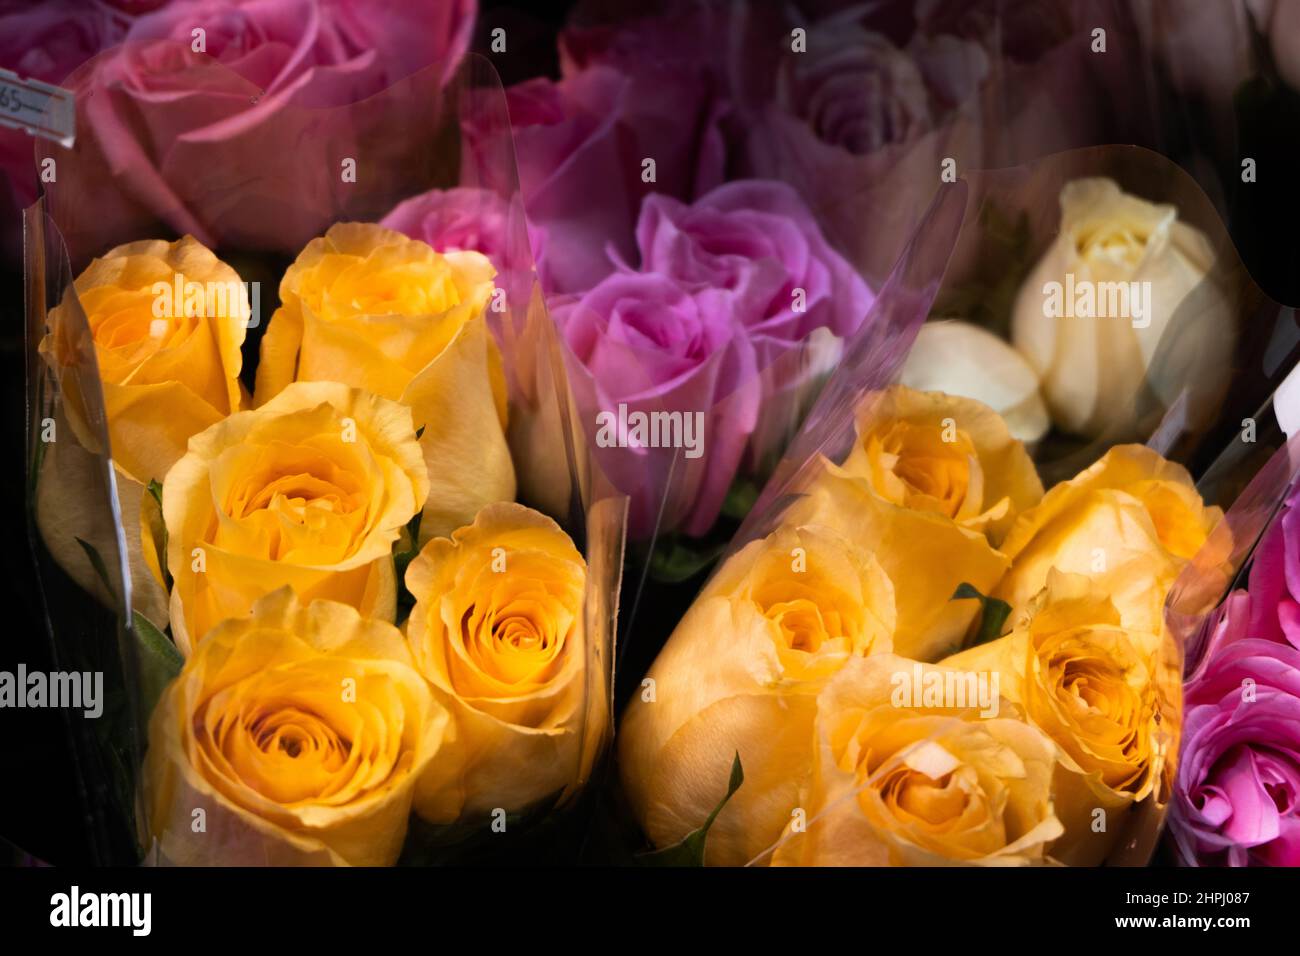 Bouquet de fleurs avec roses pourpres et orange enveloppées dans un emballage en plastique Banque D'Images